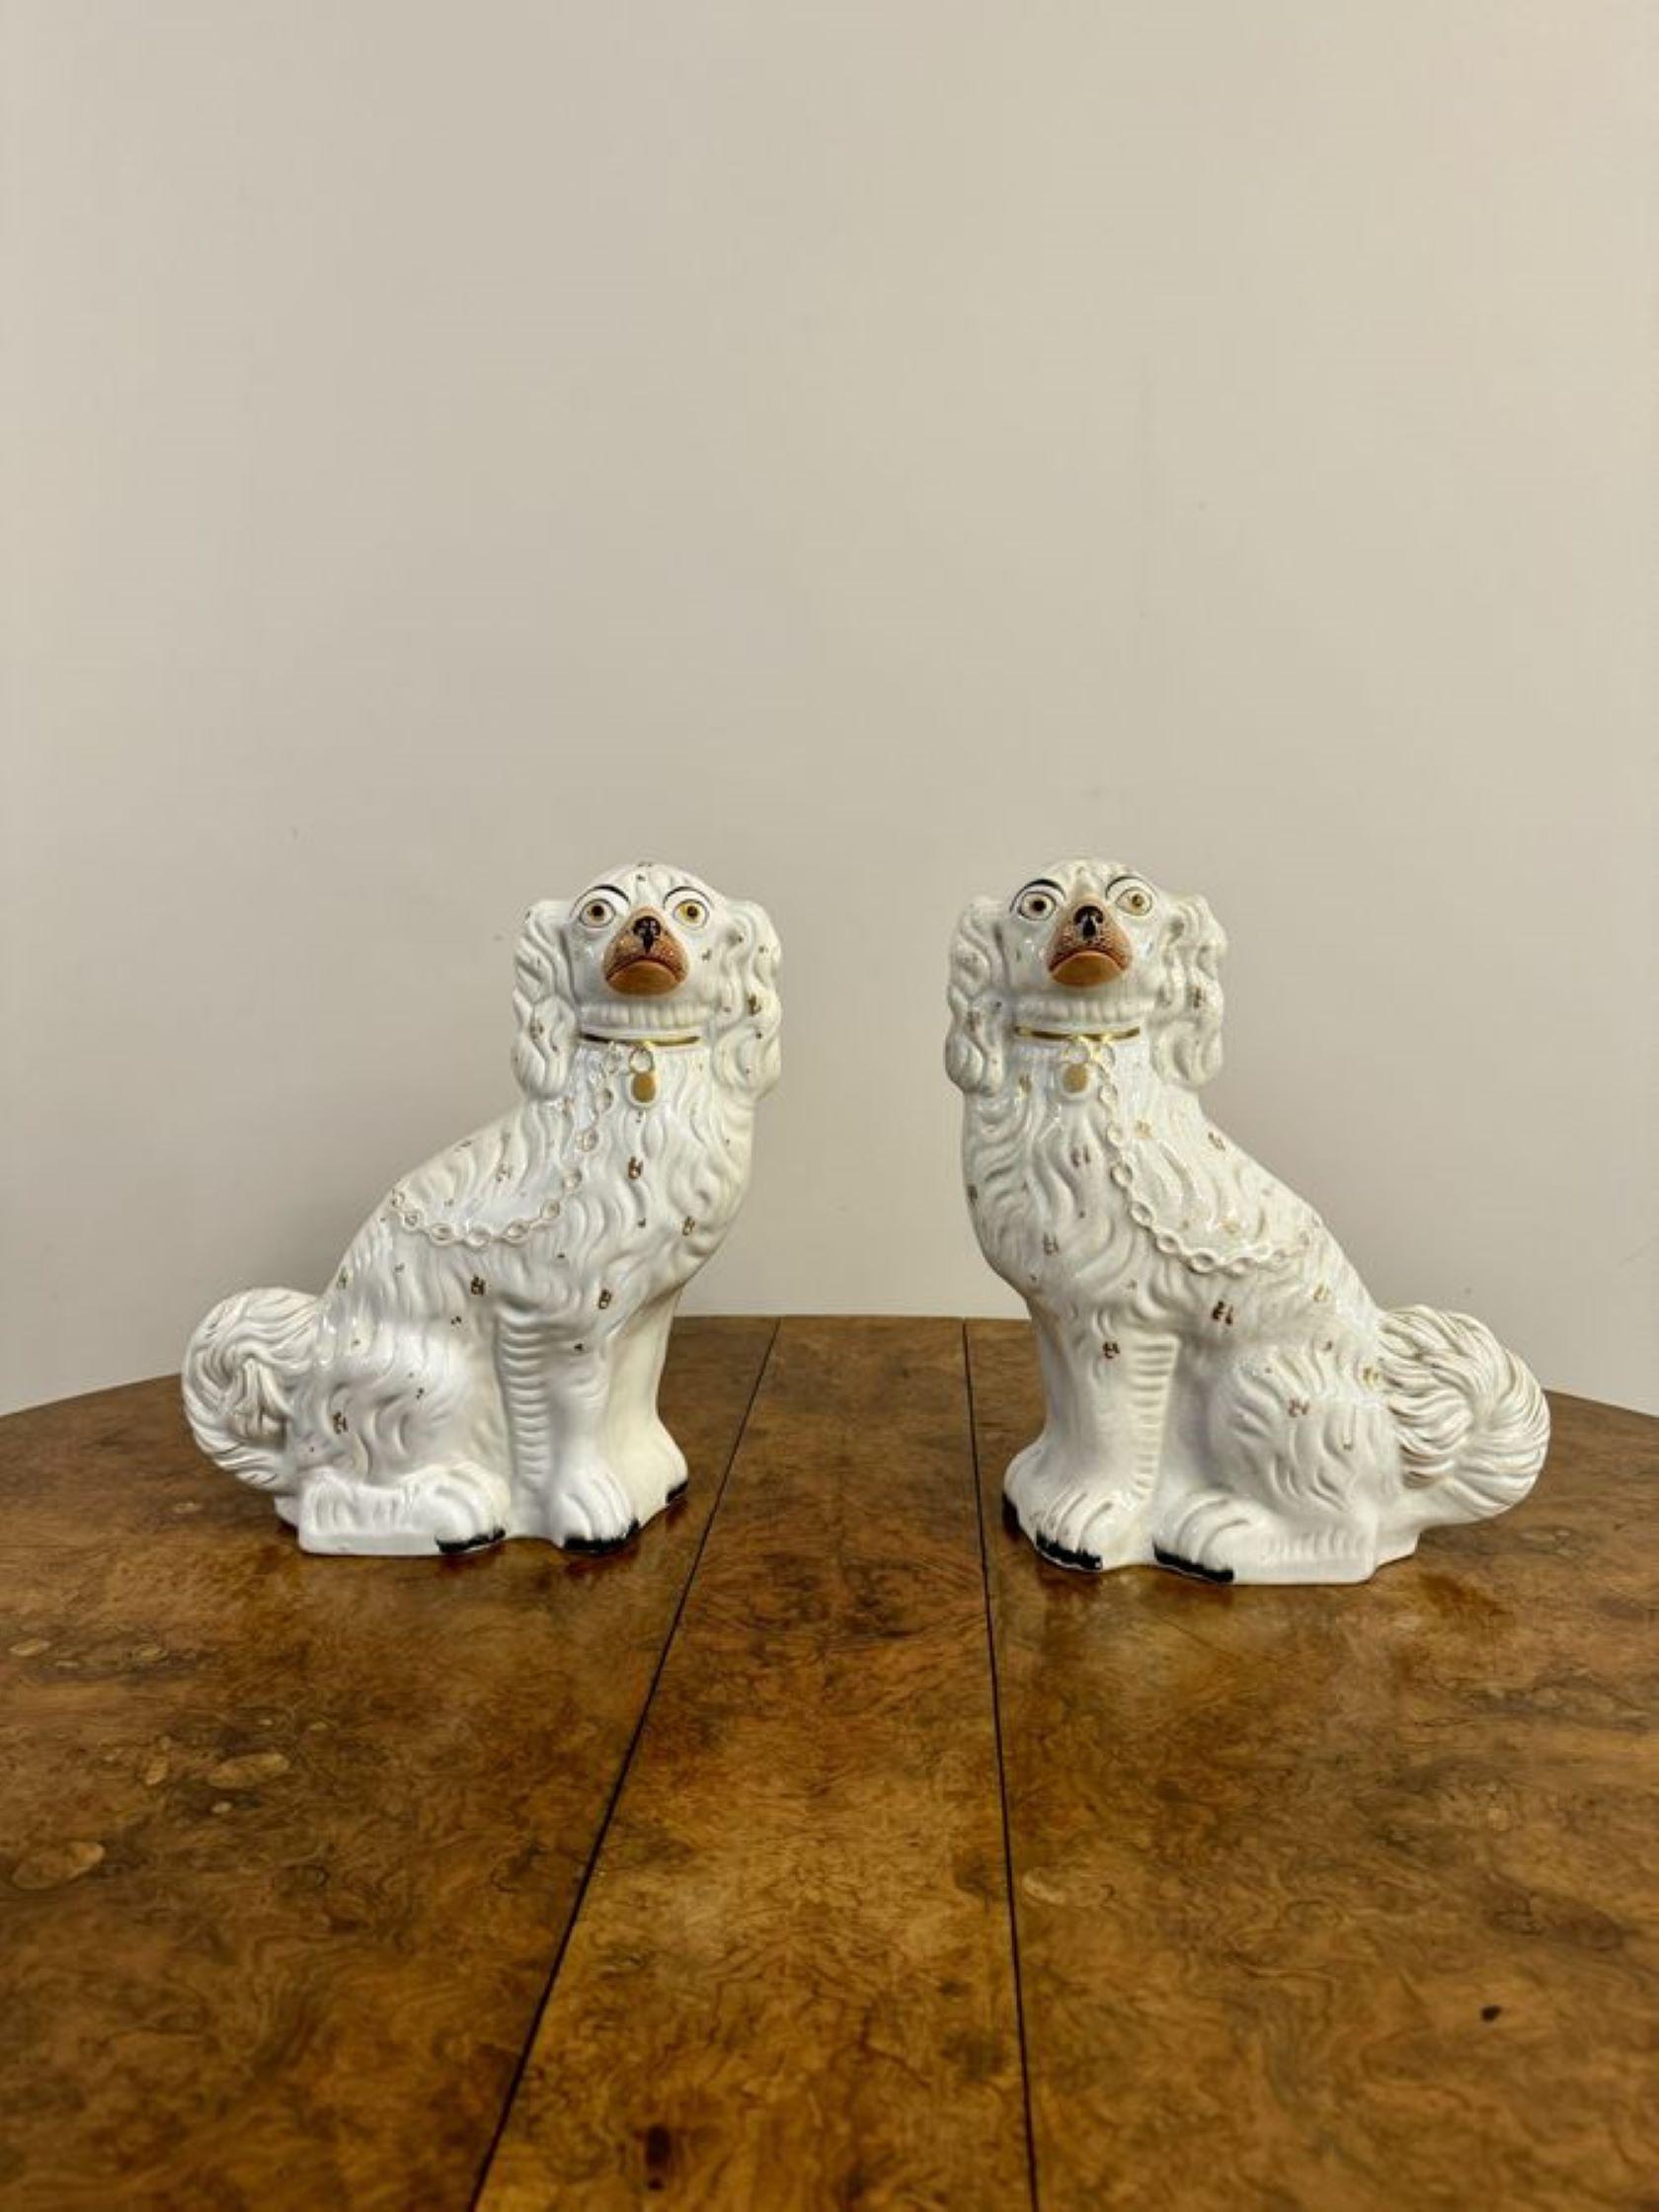 Großes Paar antiker viktorianischer sitzender Staffordshire Spaniel-Hunde, mit einem großen Paar antiker viktorianischer sitzender Spaniel-Hunde mit passenden weißen Mänteln, Golddetails mit goldenen Halsbändern, Vorhängeschlössern und Ketten.

D.